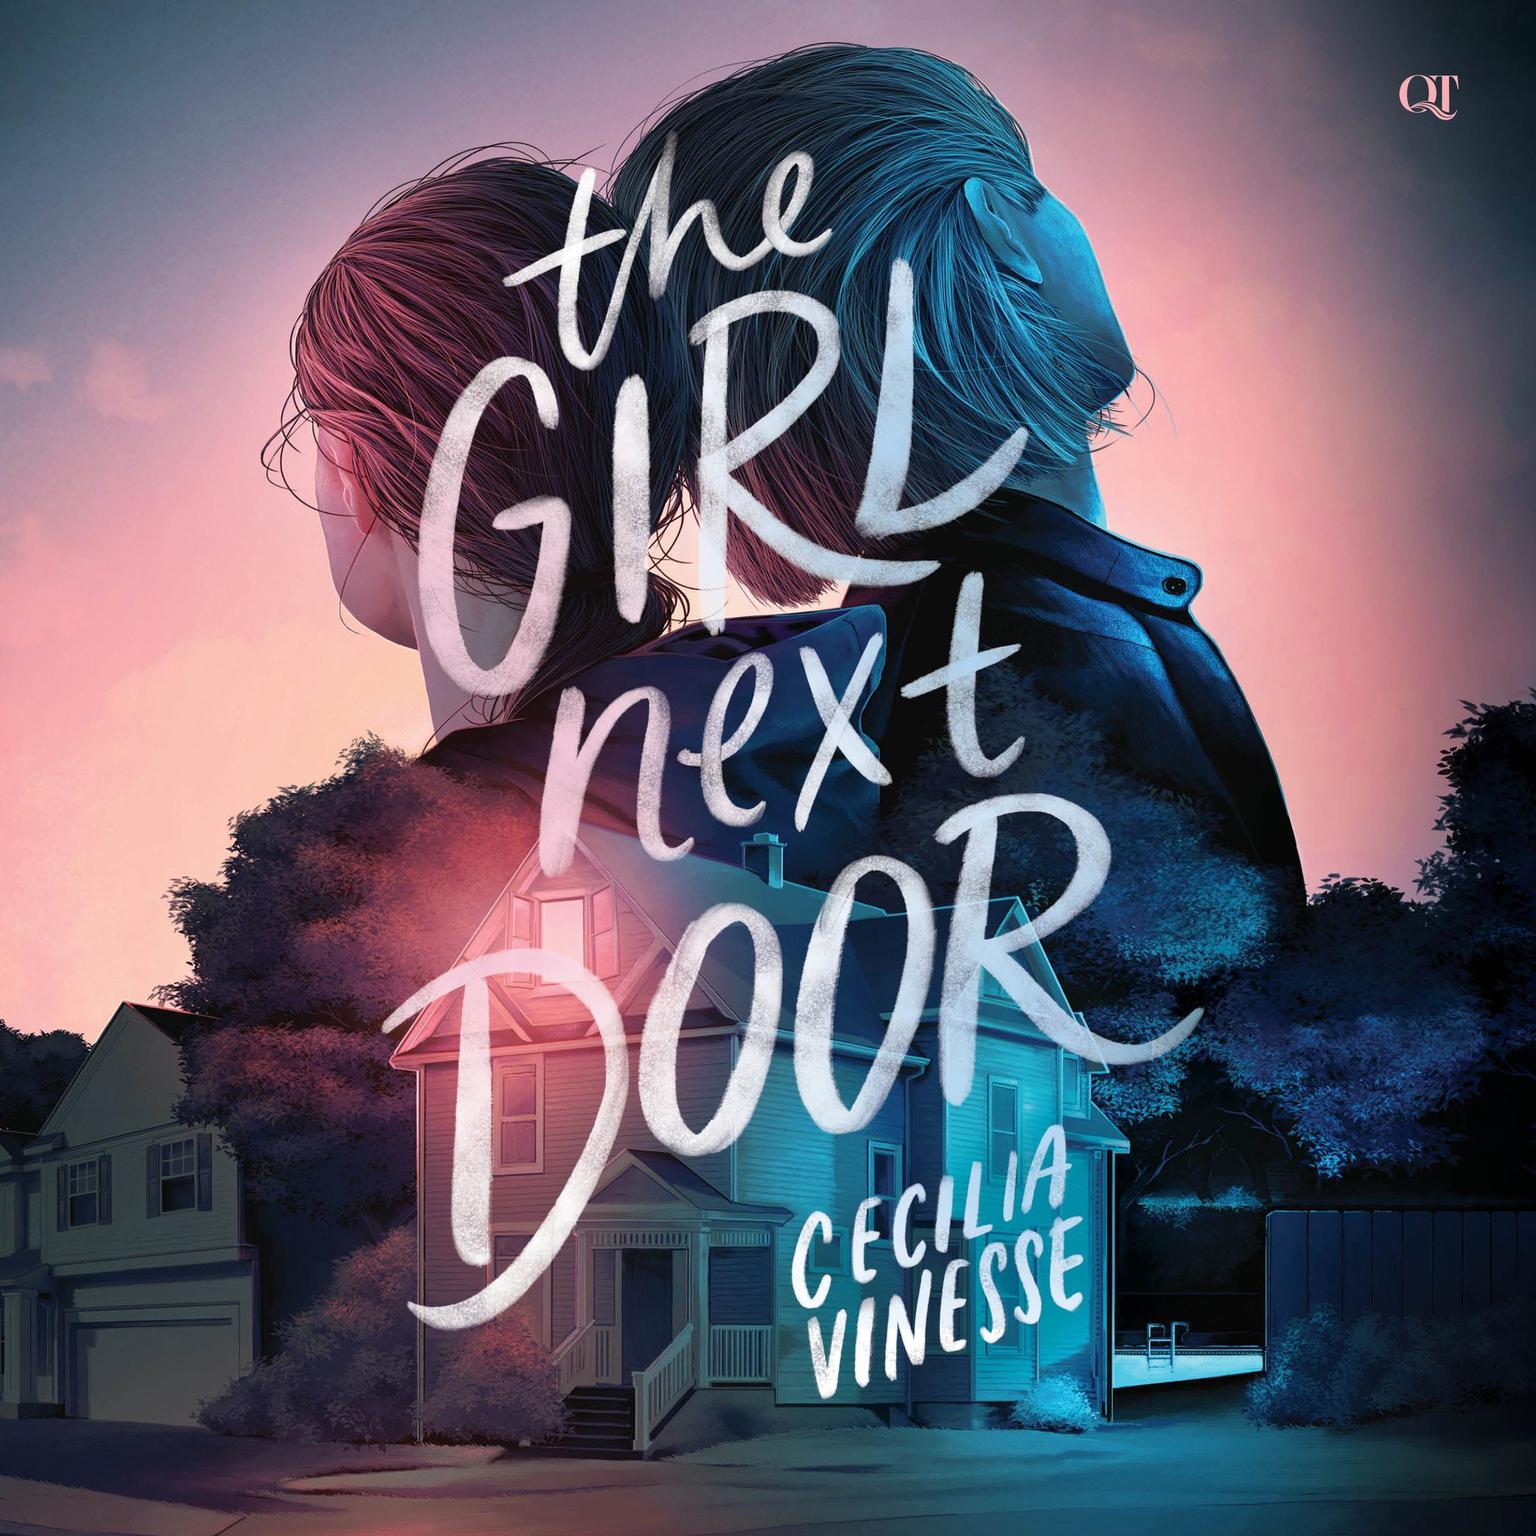 The Girl Next Door Audiobook, by Chelsea M. Cameron